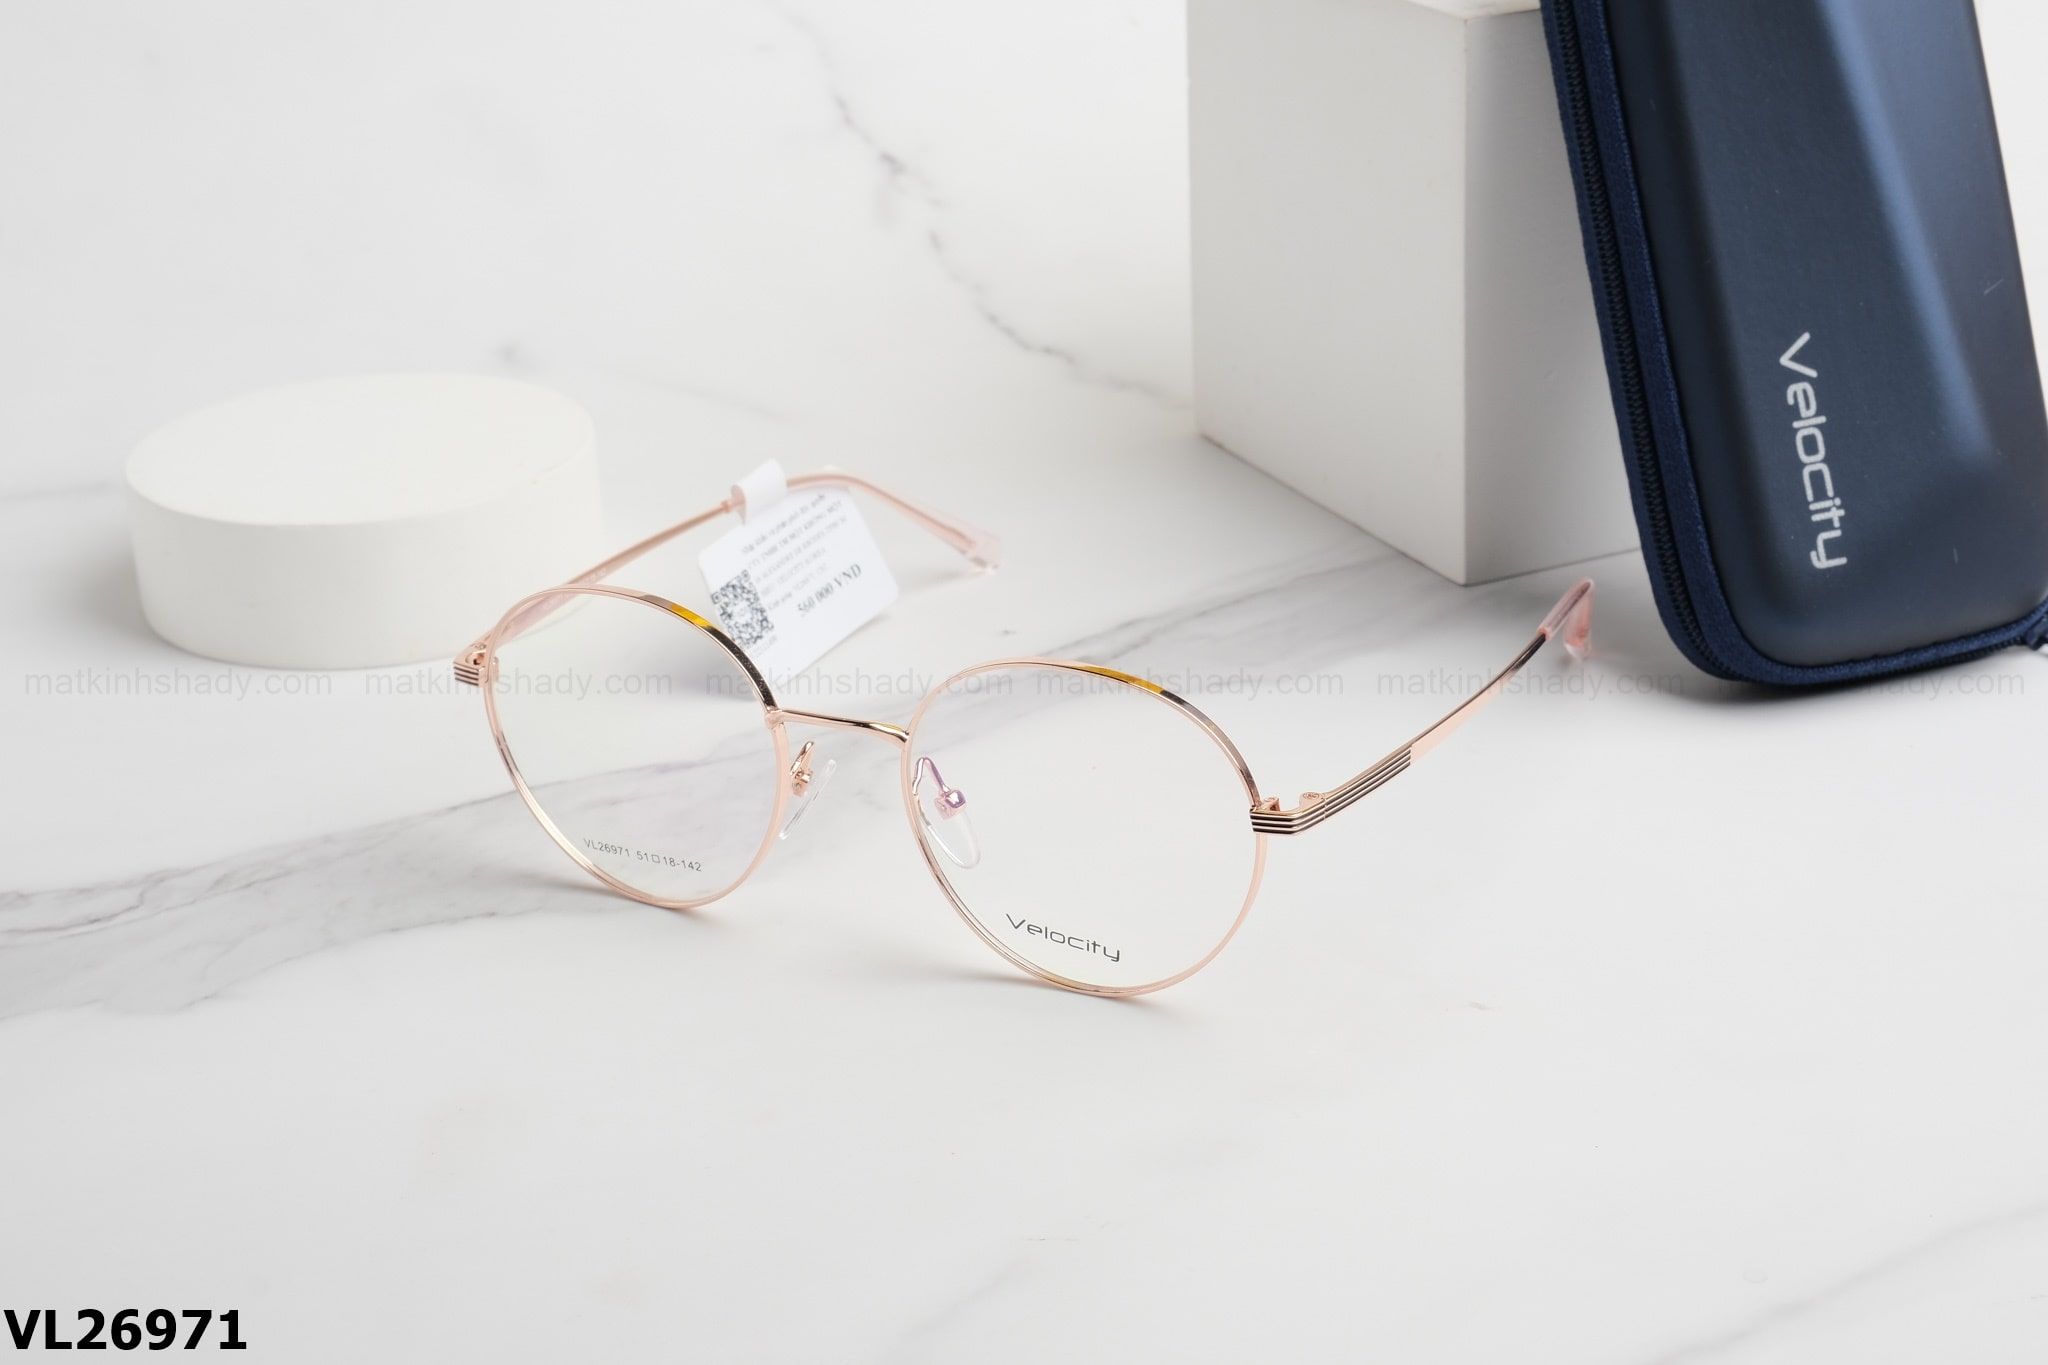  Velocity Eyewear - Glasses - VL26971 